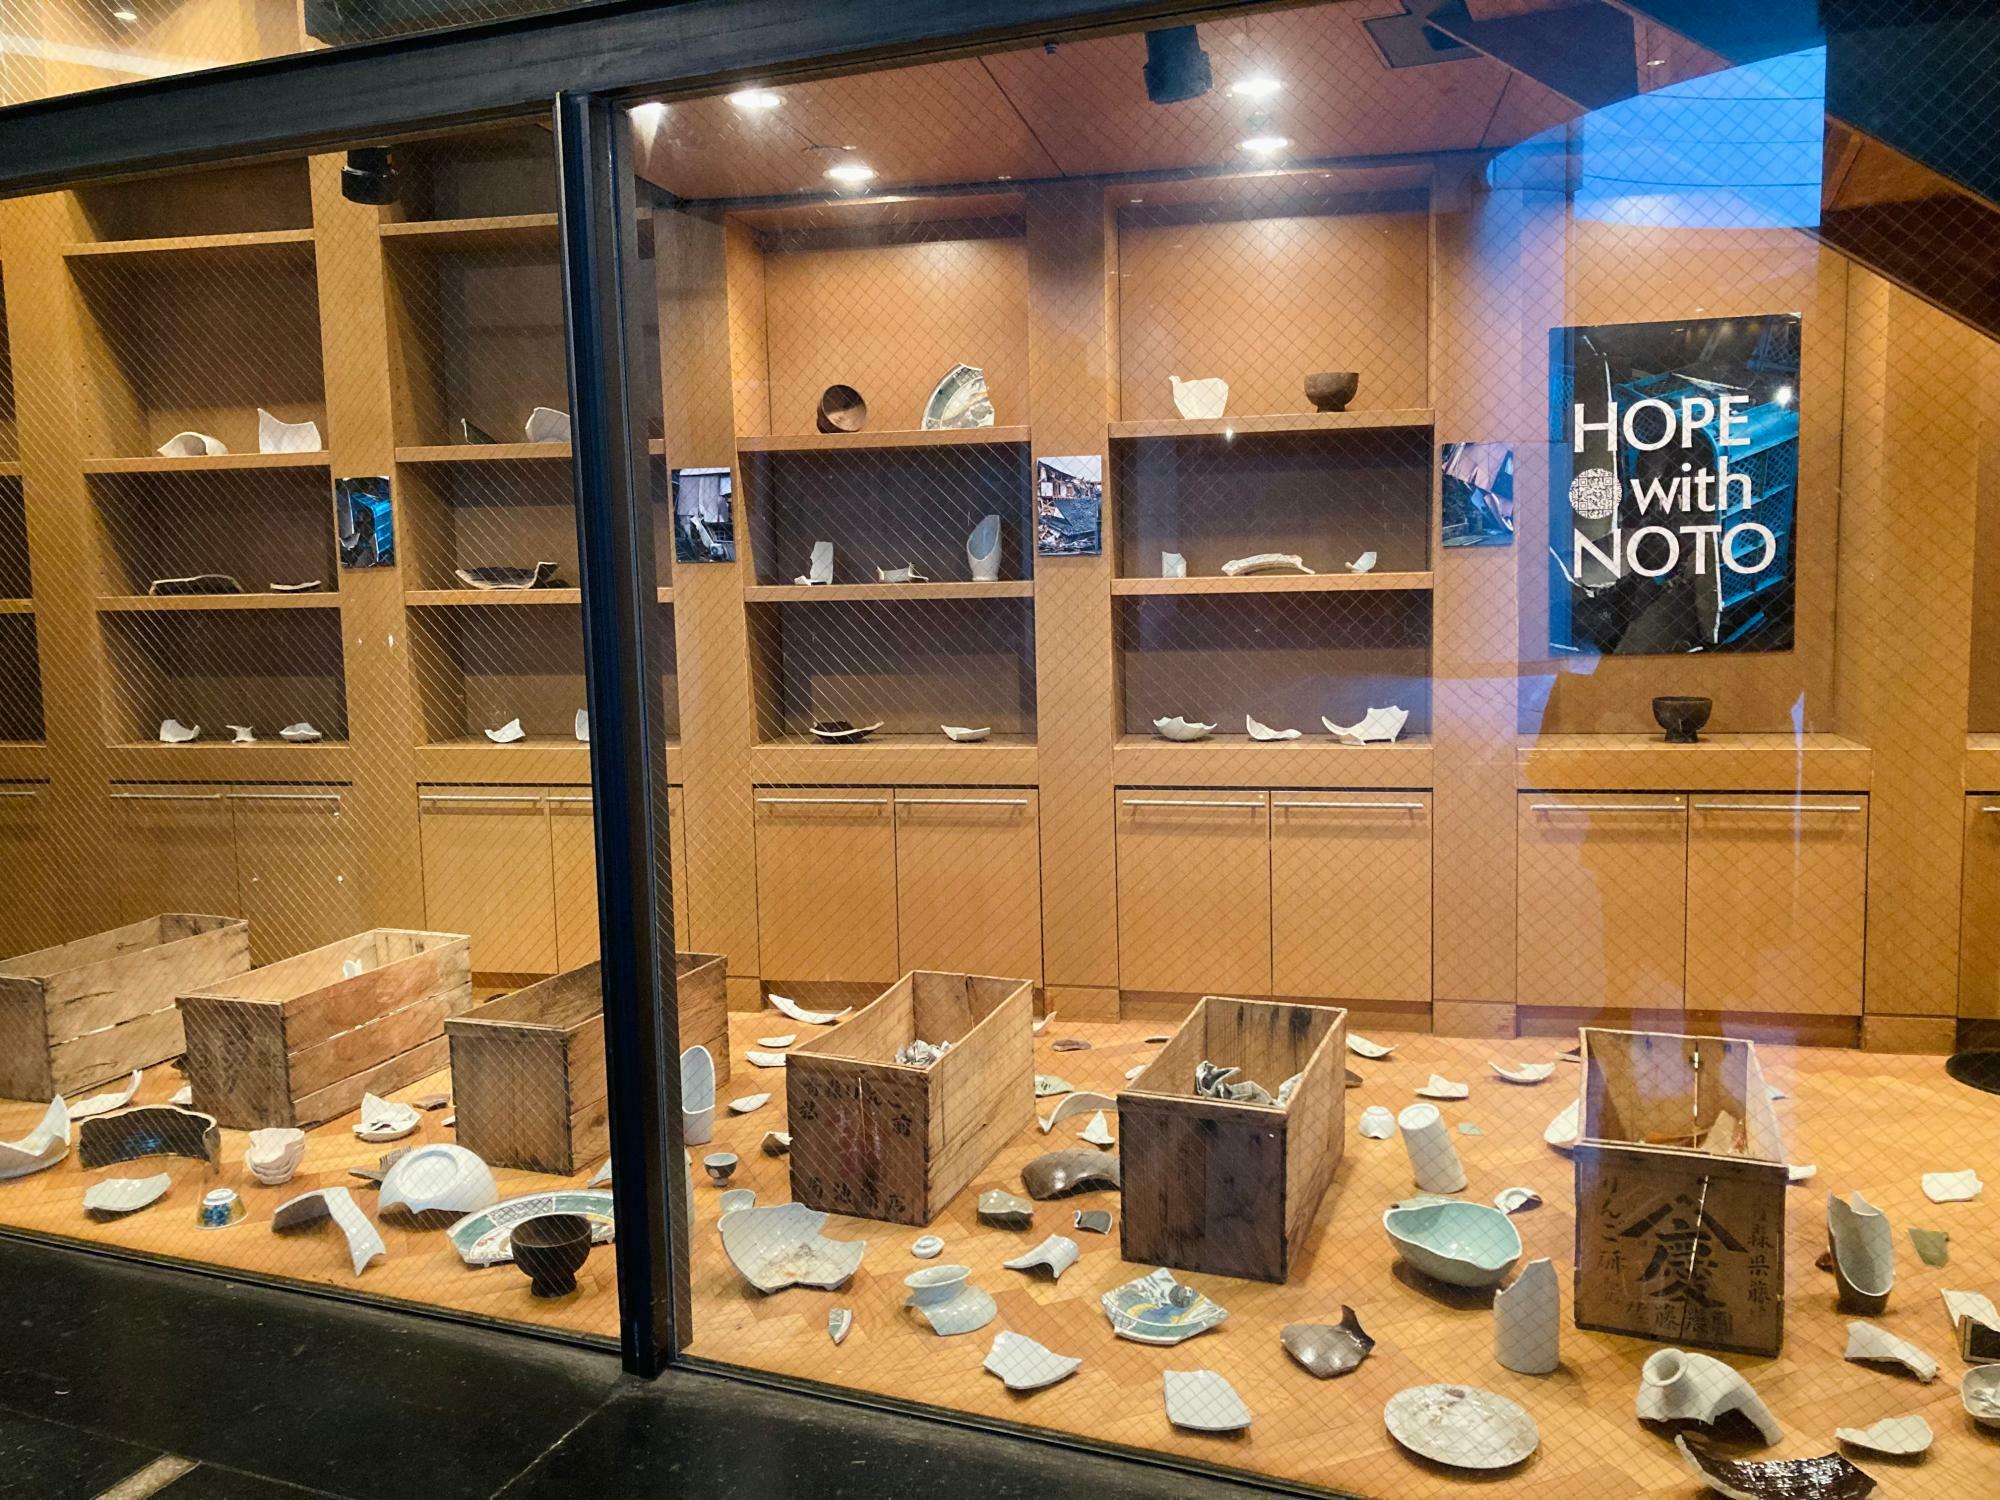 渋谷bunkamuraブックストアでの「HOPE with NOTO」の展示。能登半島地震で割れた九谷焼の器や、埃や土をかぶってしまった輪島塗の漆器、被災地の写真が展示されている